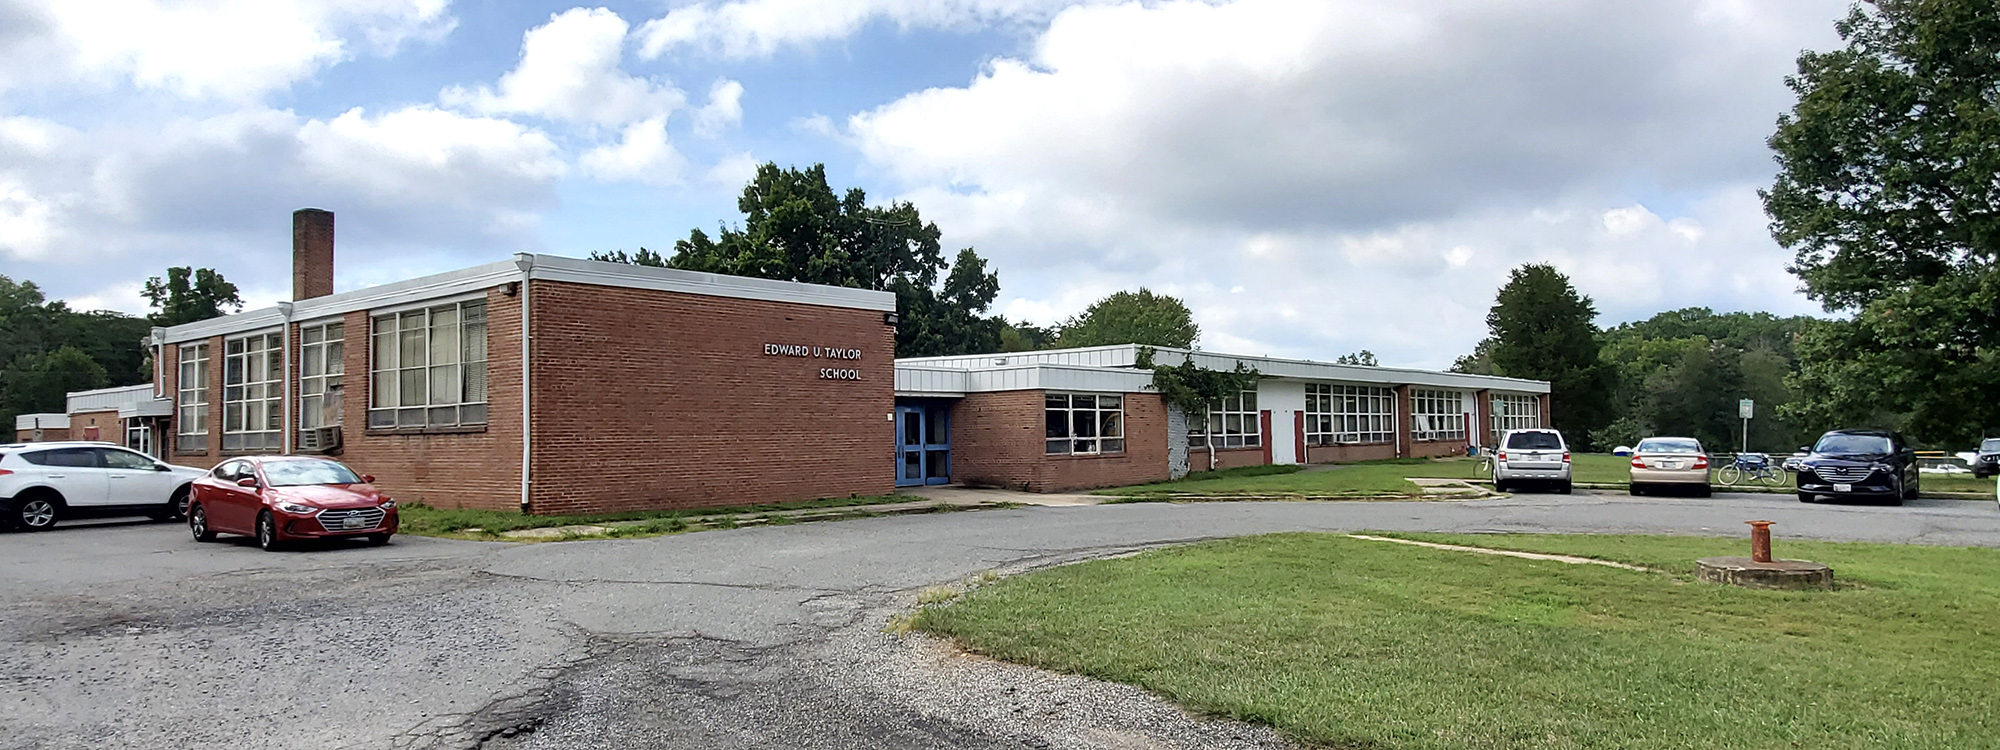 The former Edward U. Taylor Elementary School building 